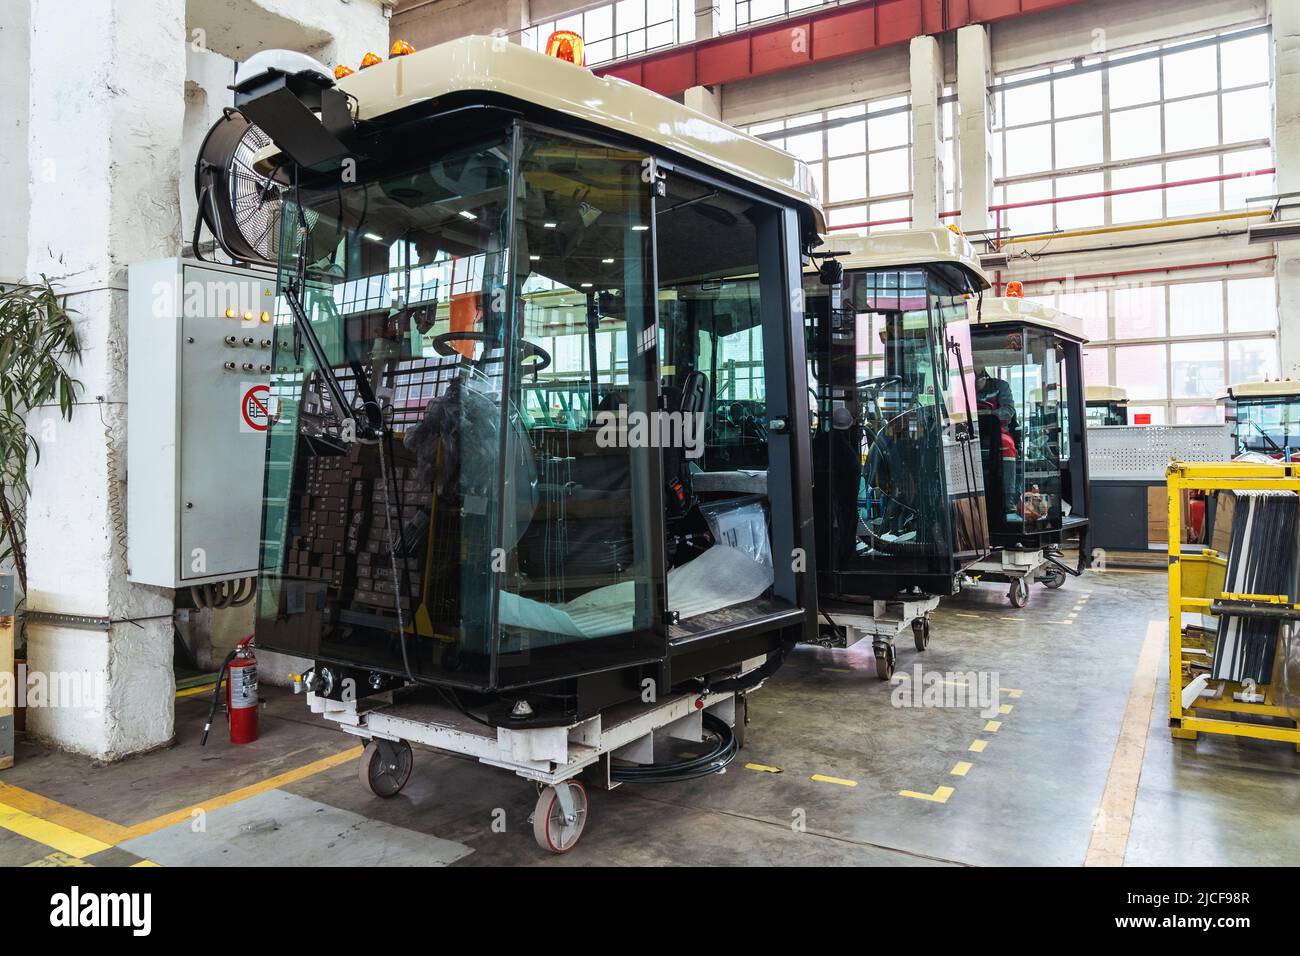 Cabine di mietitrebbie o trattori in officina di montaggio di impianti per la produzione di macchine agricole. Foto Stock